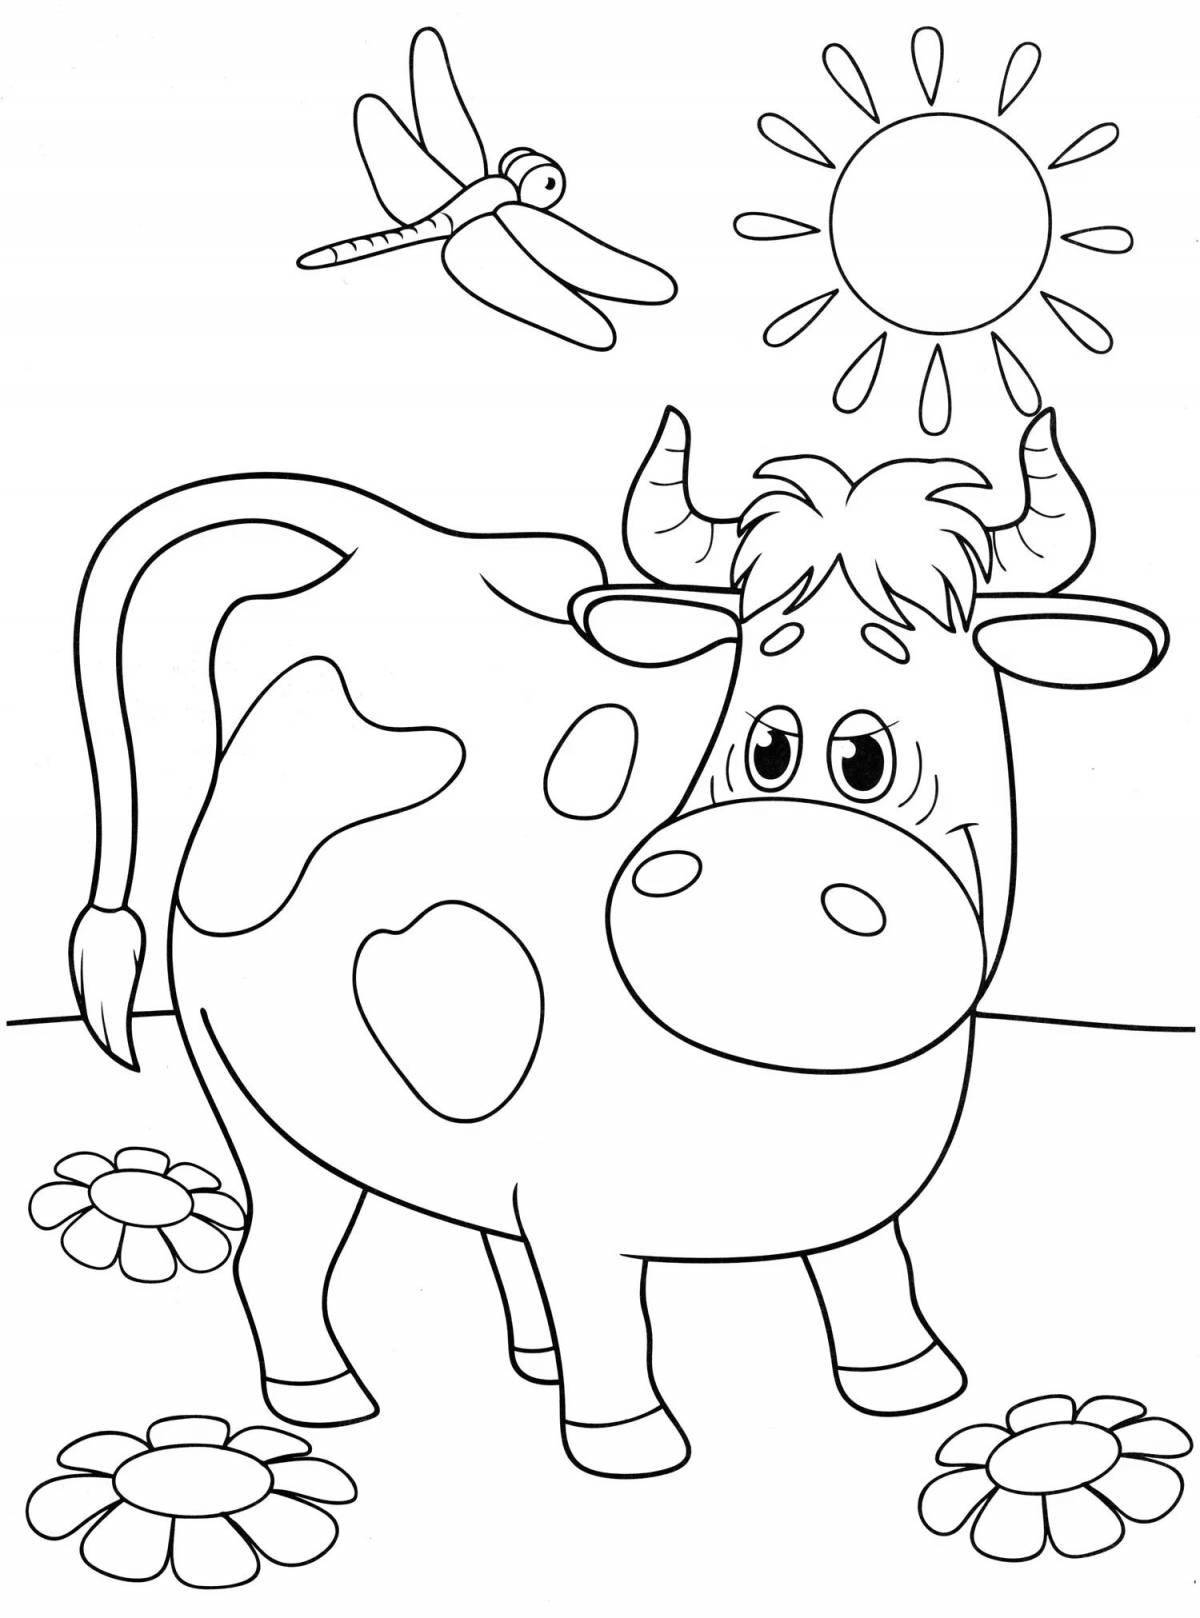 Волшебный рисунок коровы для детей